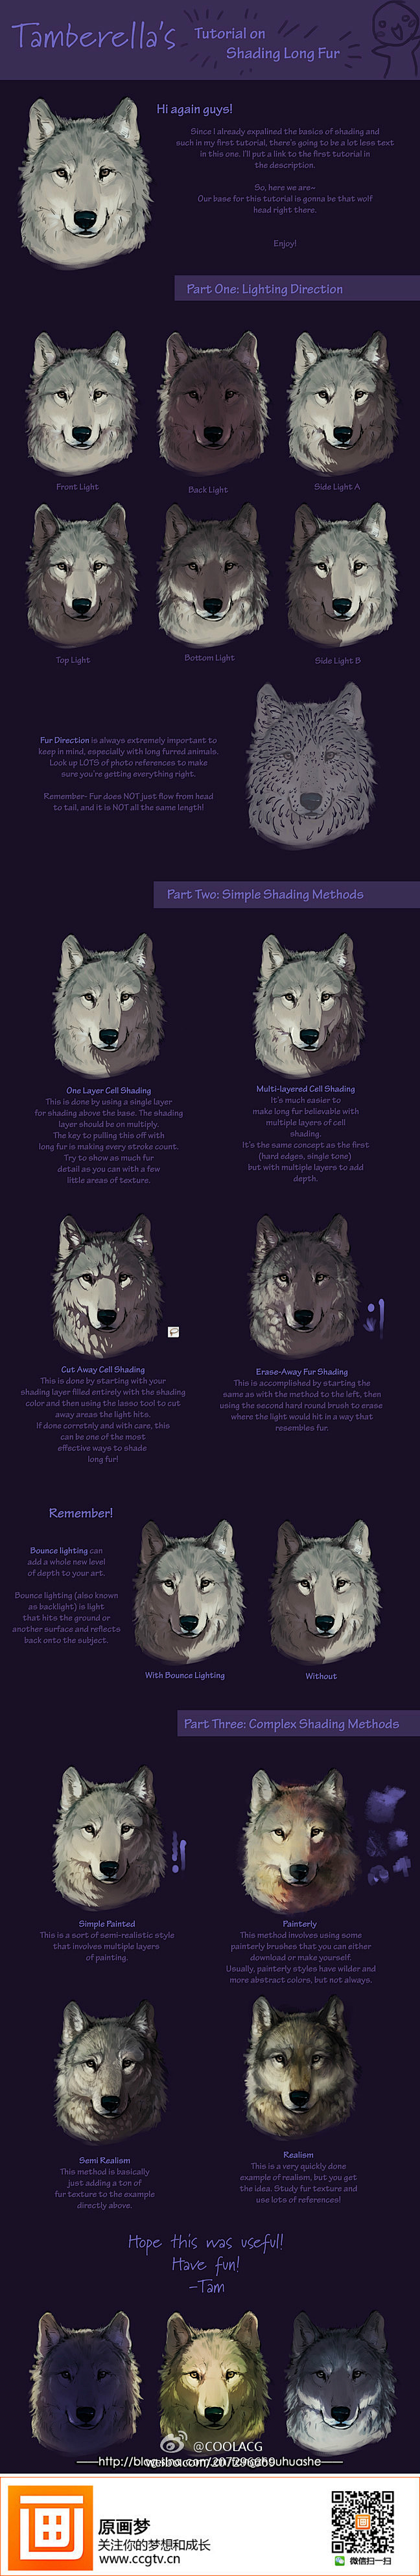 【绘画教材】狼的头部光影变化解析,非常赞...